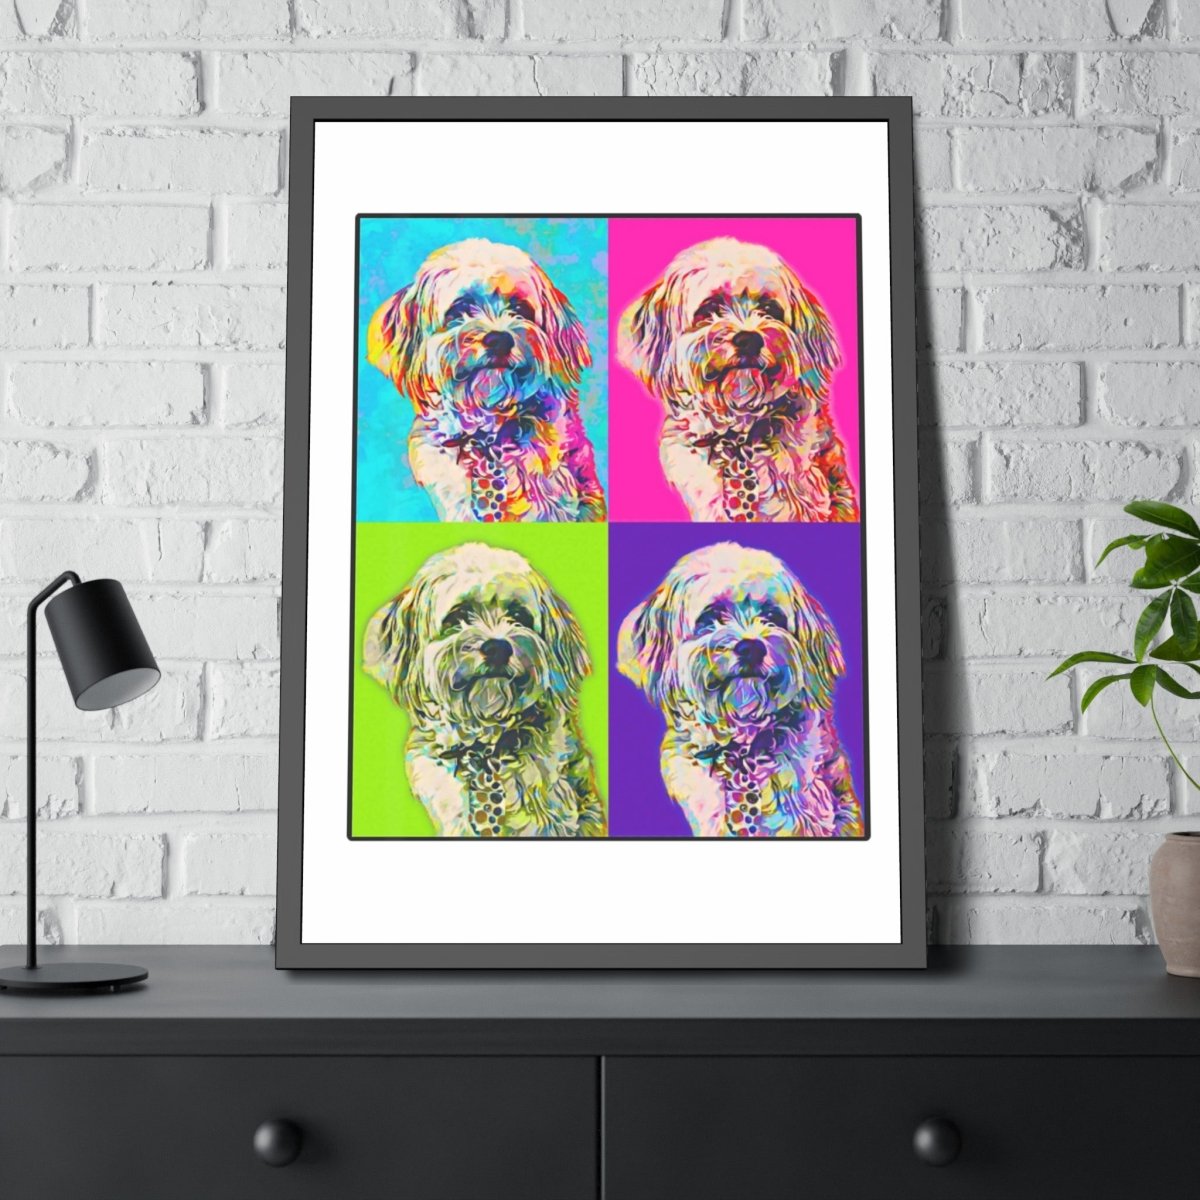 Custom Framed Dog Portrait (In Time For Xmas!) - Best Friends Art